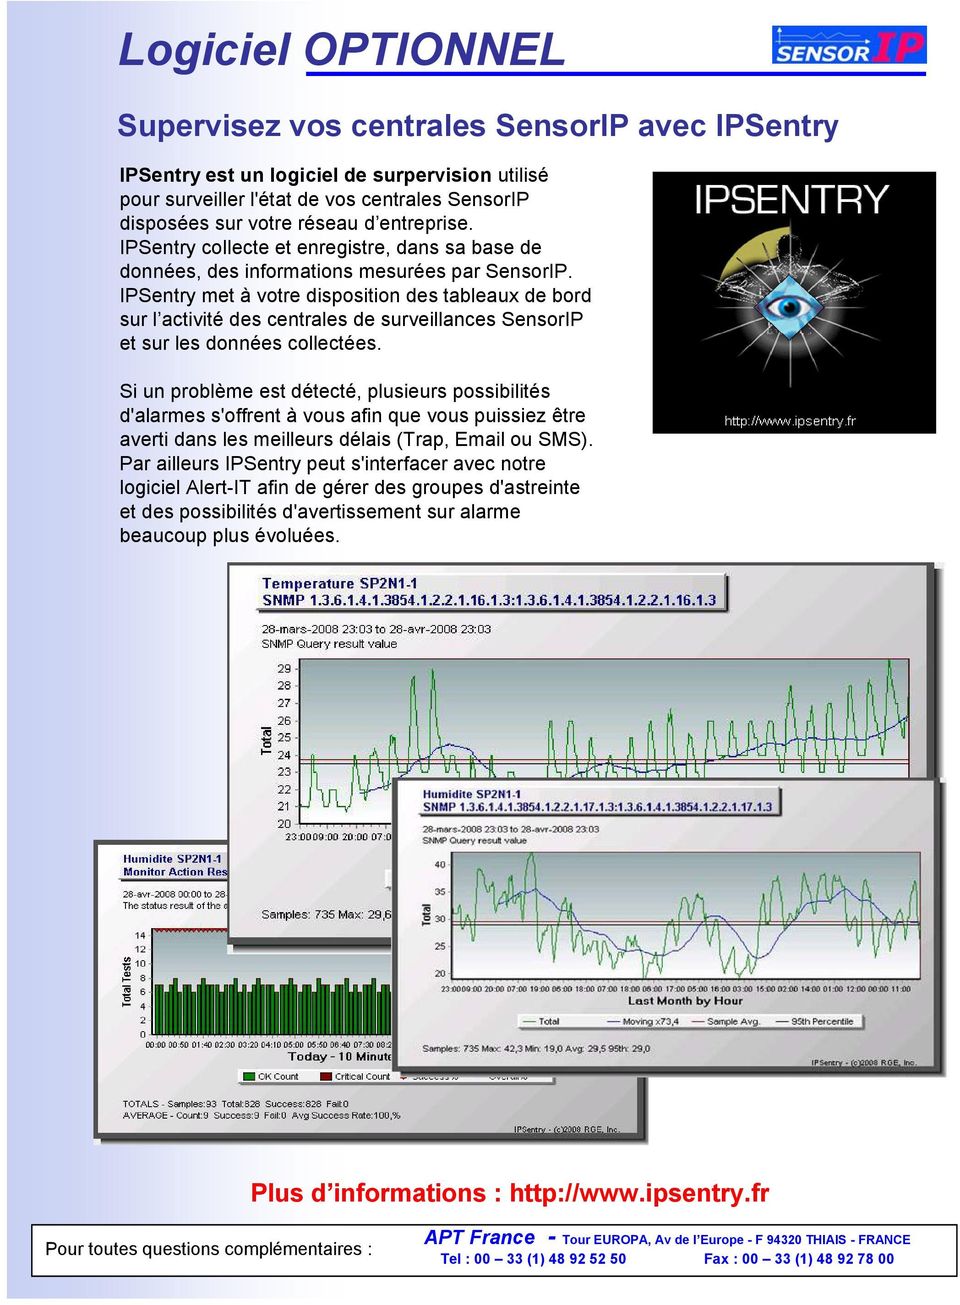 IPSentry met à votre disposition des tableaux de bord sur l activité des centrales de surveillances SensorIP et sur les données collectées.